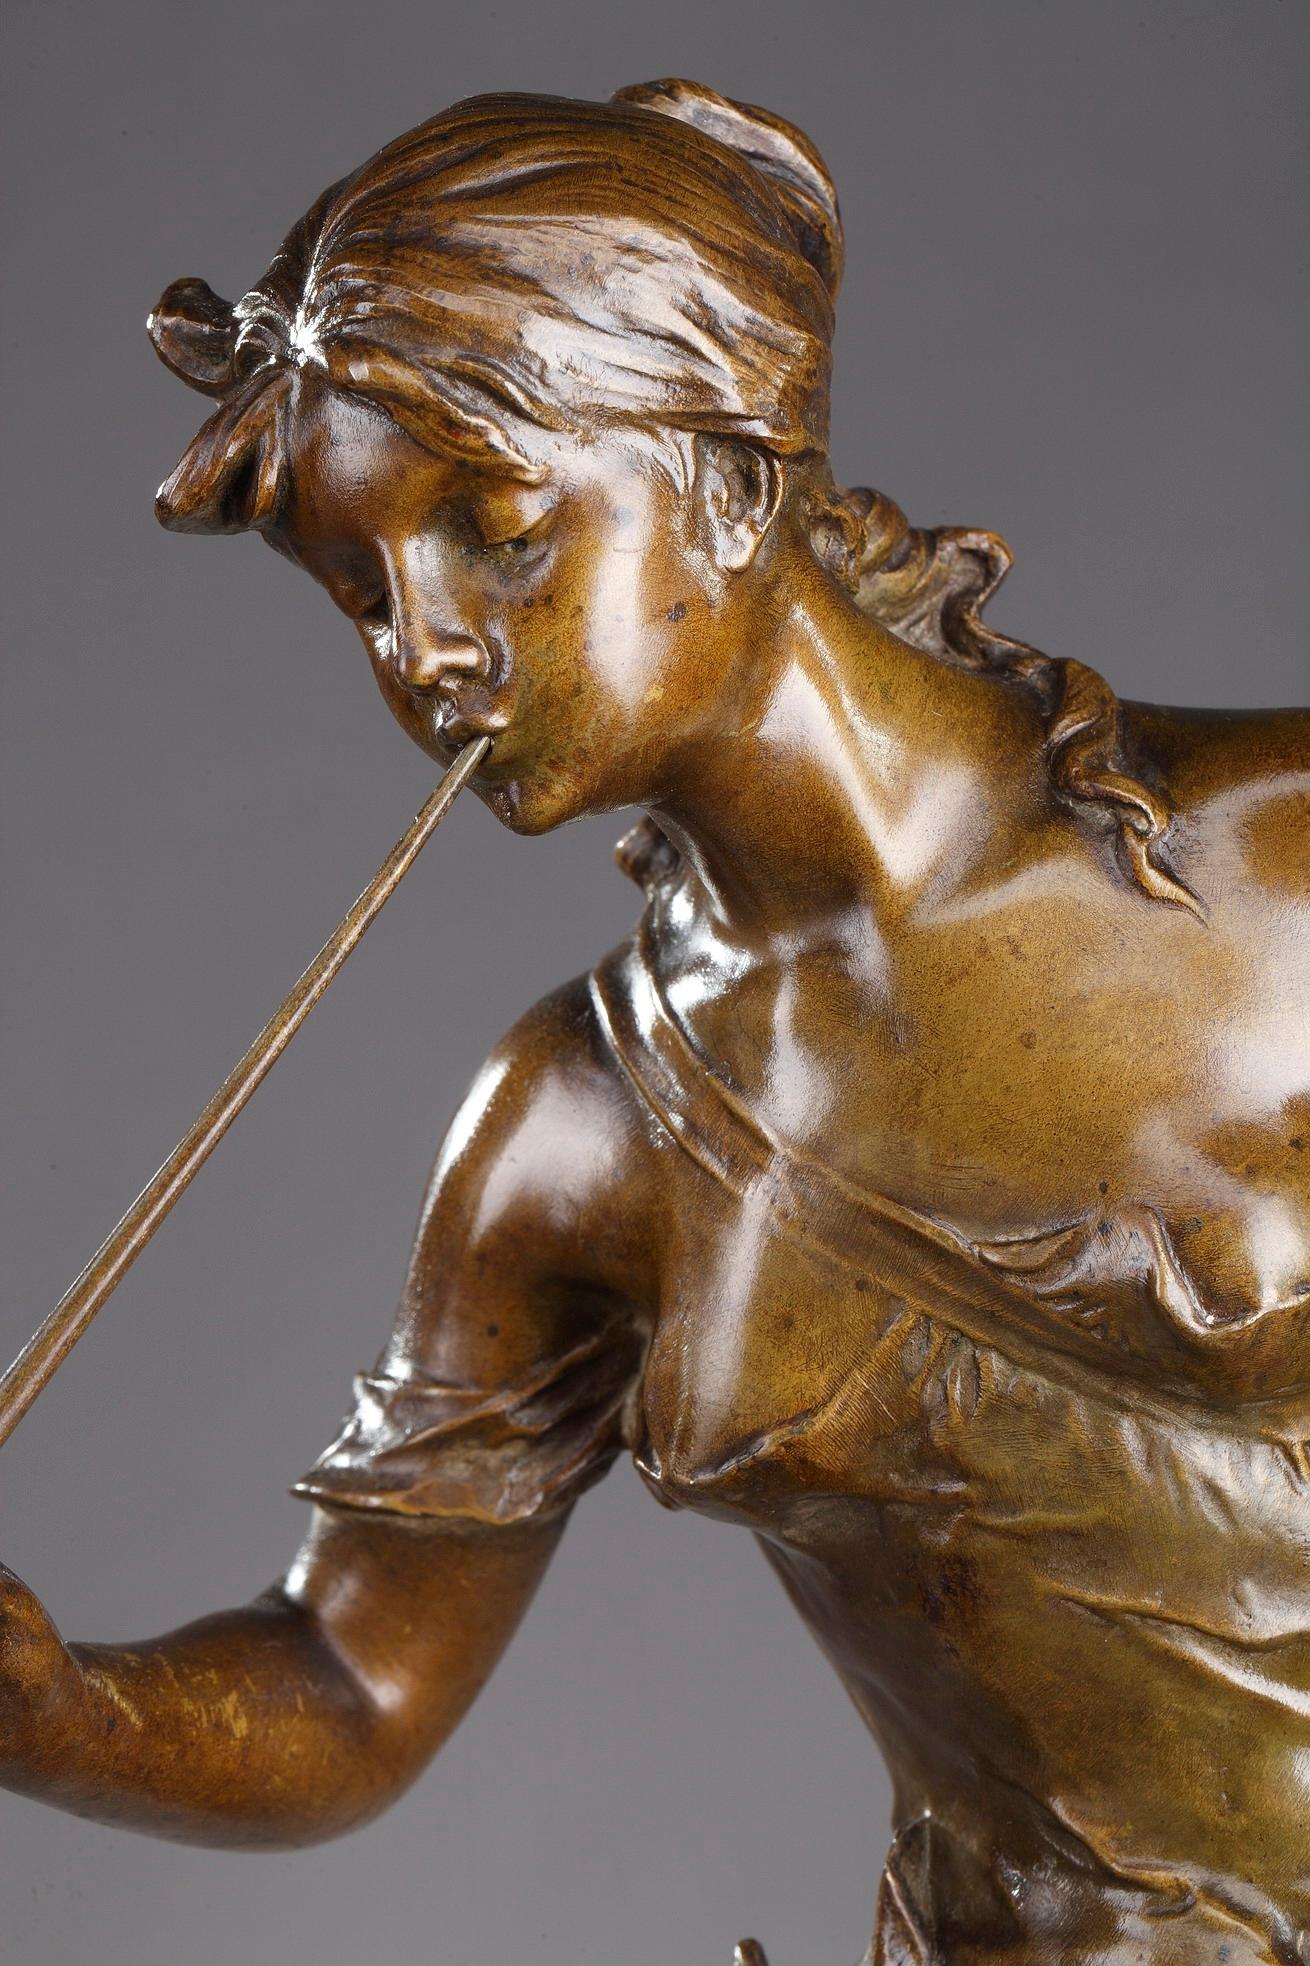 Patinated Bronze Casting Le Chant du Saule by Édouard Drouot (French, 1859-1945)